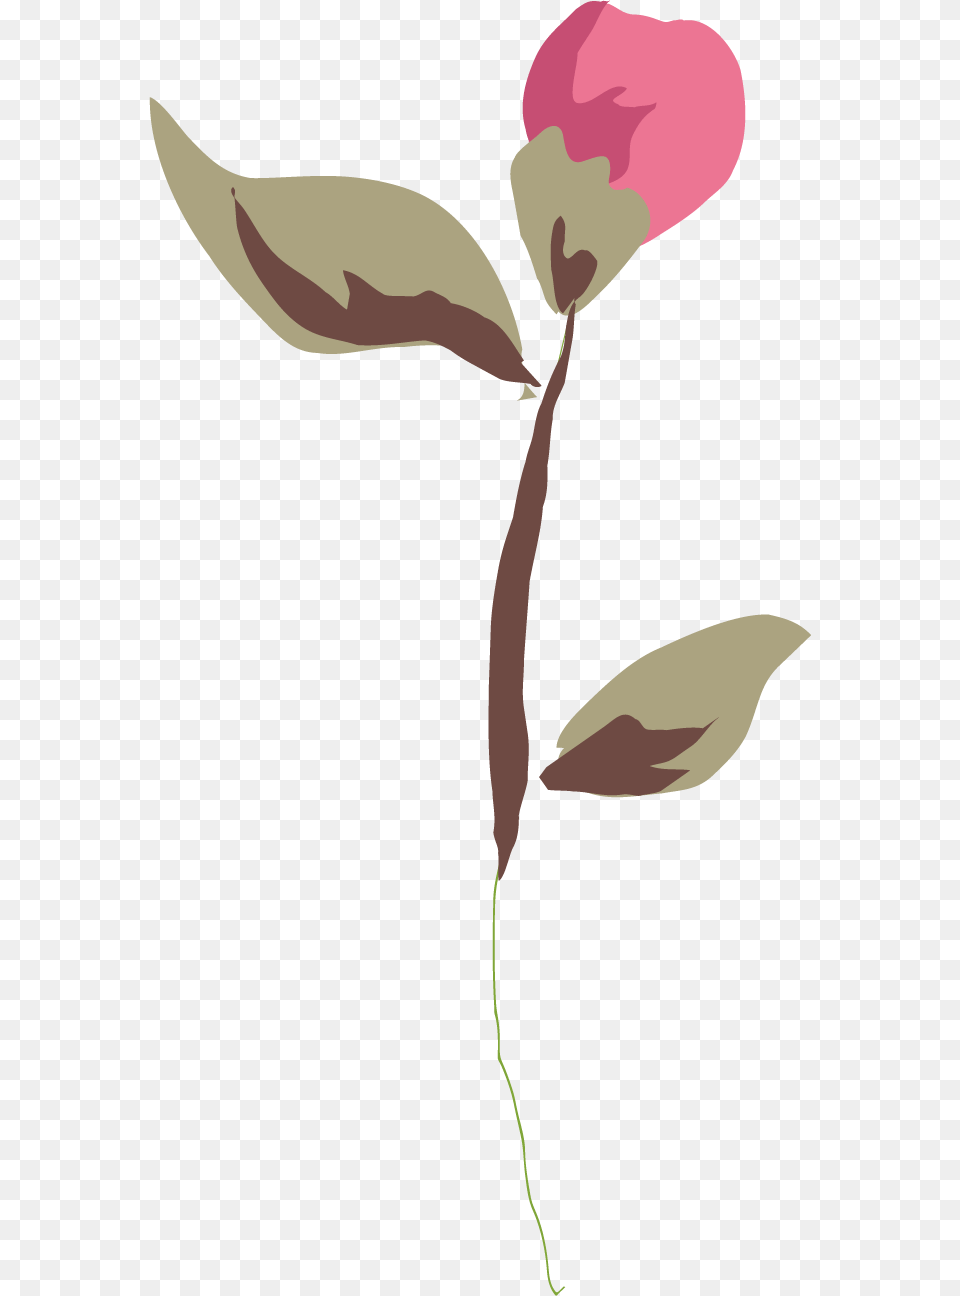 Rose Leaf, Flower, Petal, Plant, Animal Png